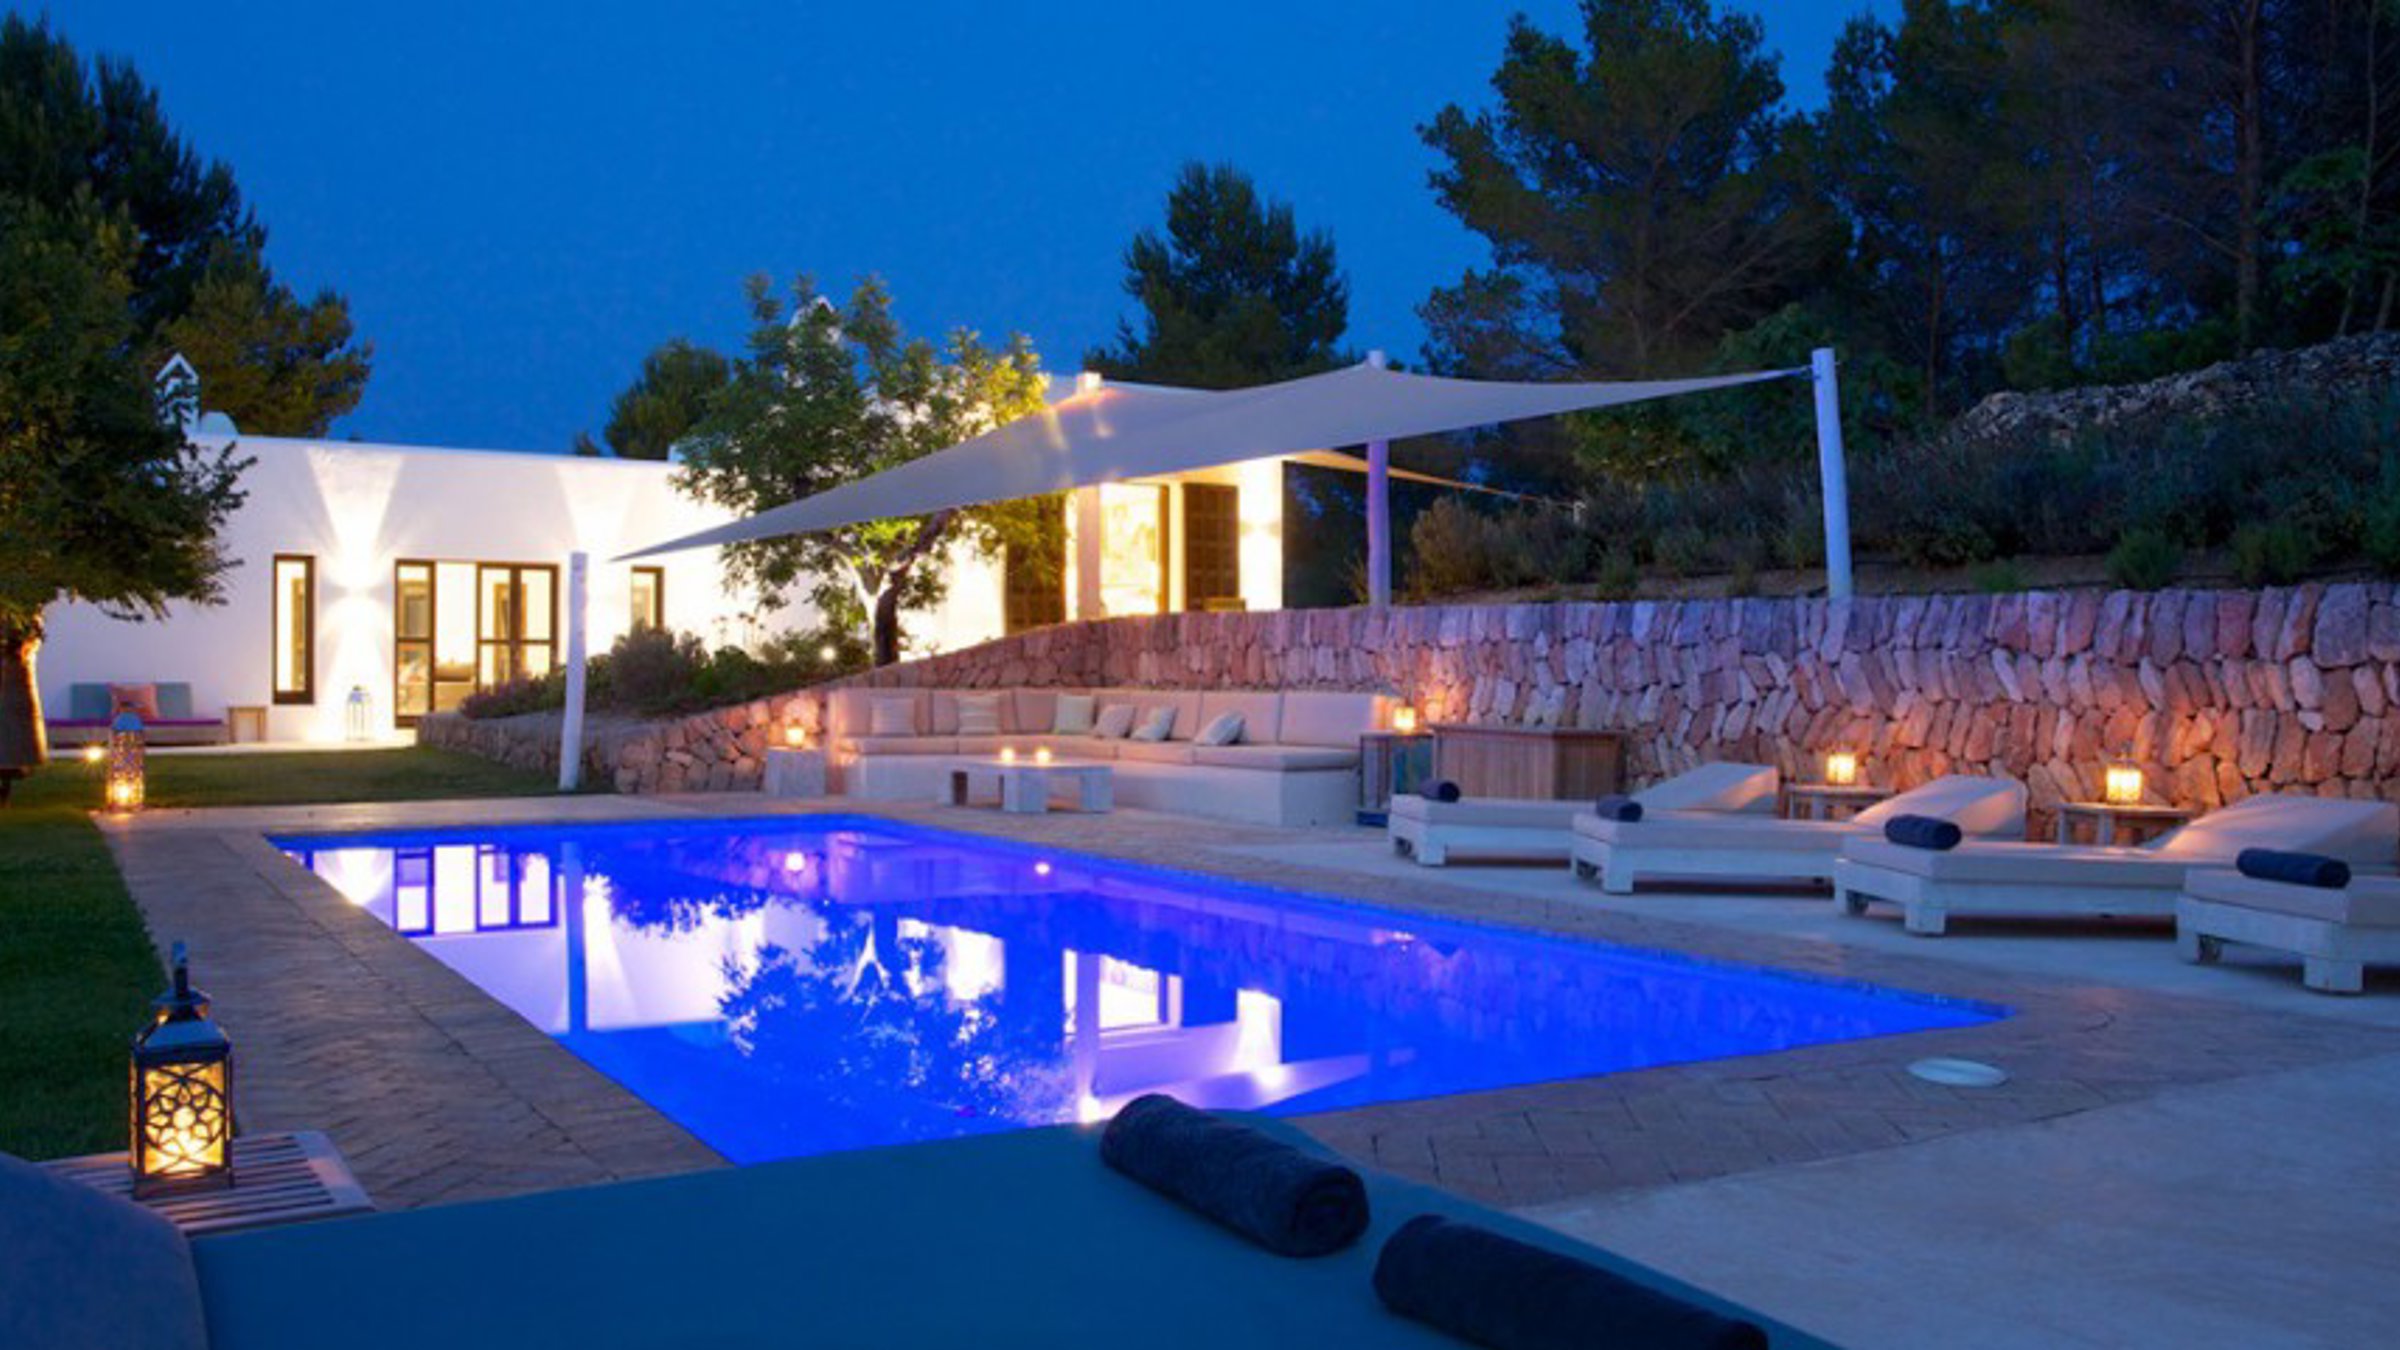 Discovering Ibiza’s cosy winter villas